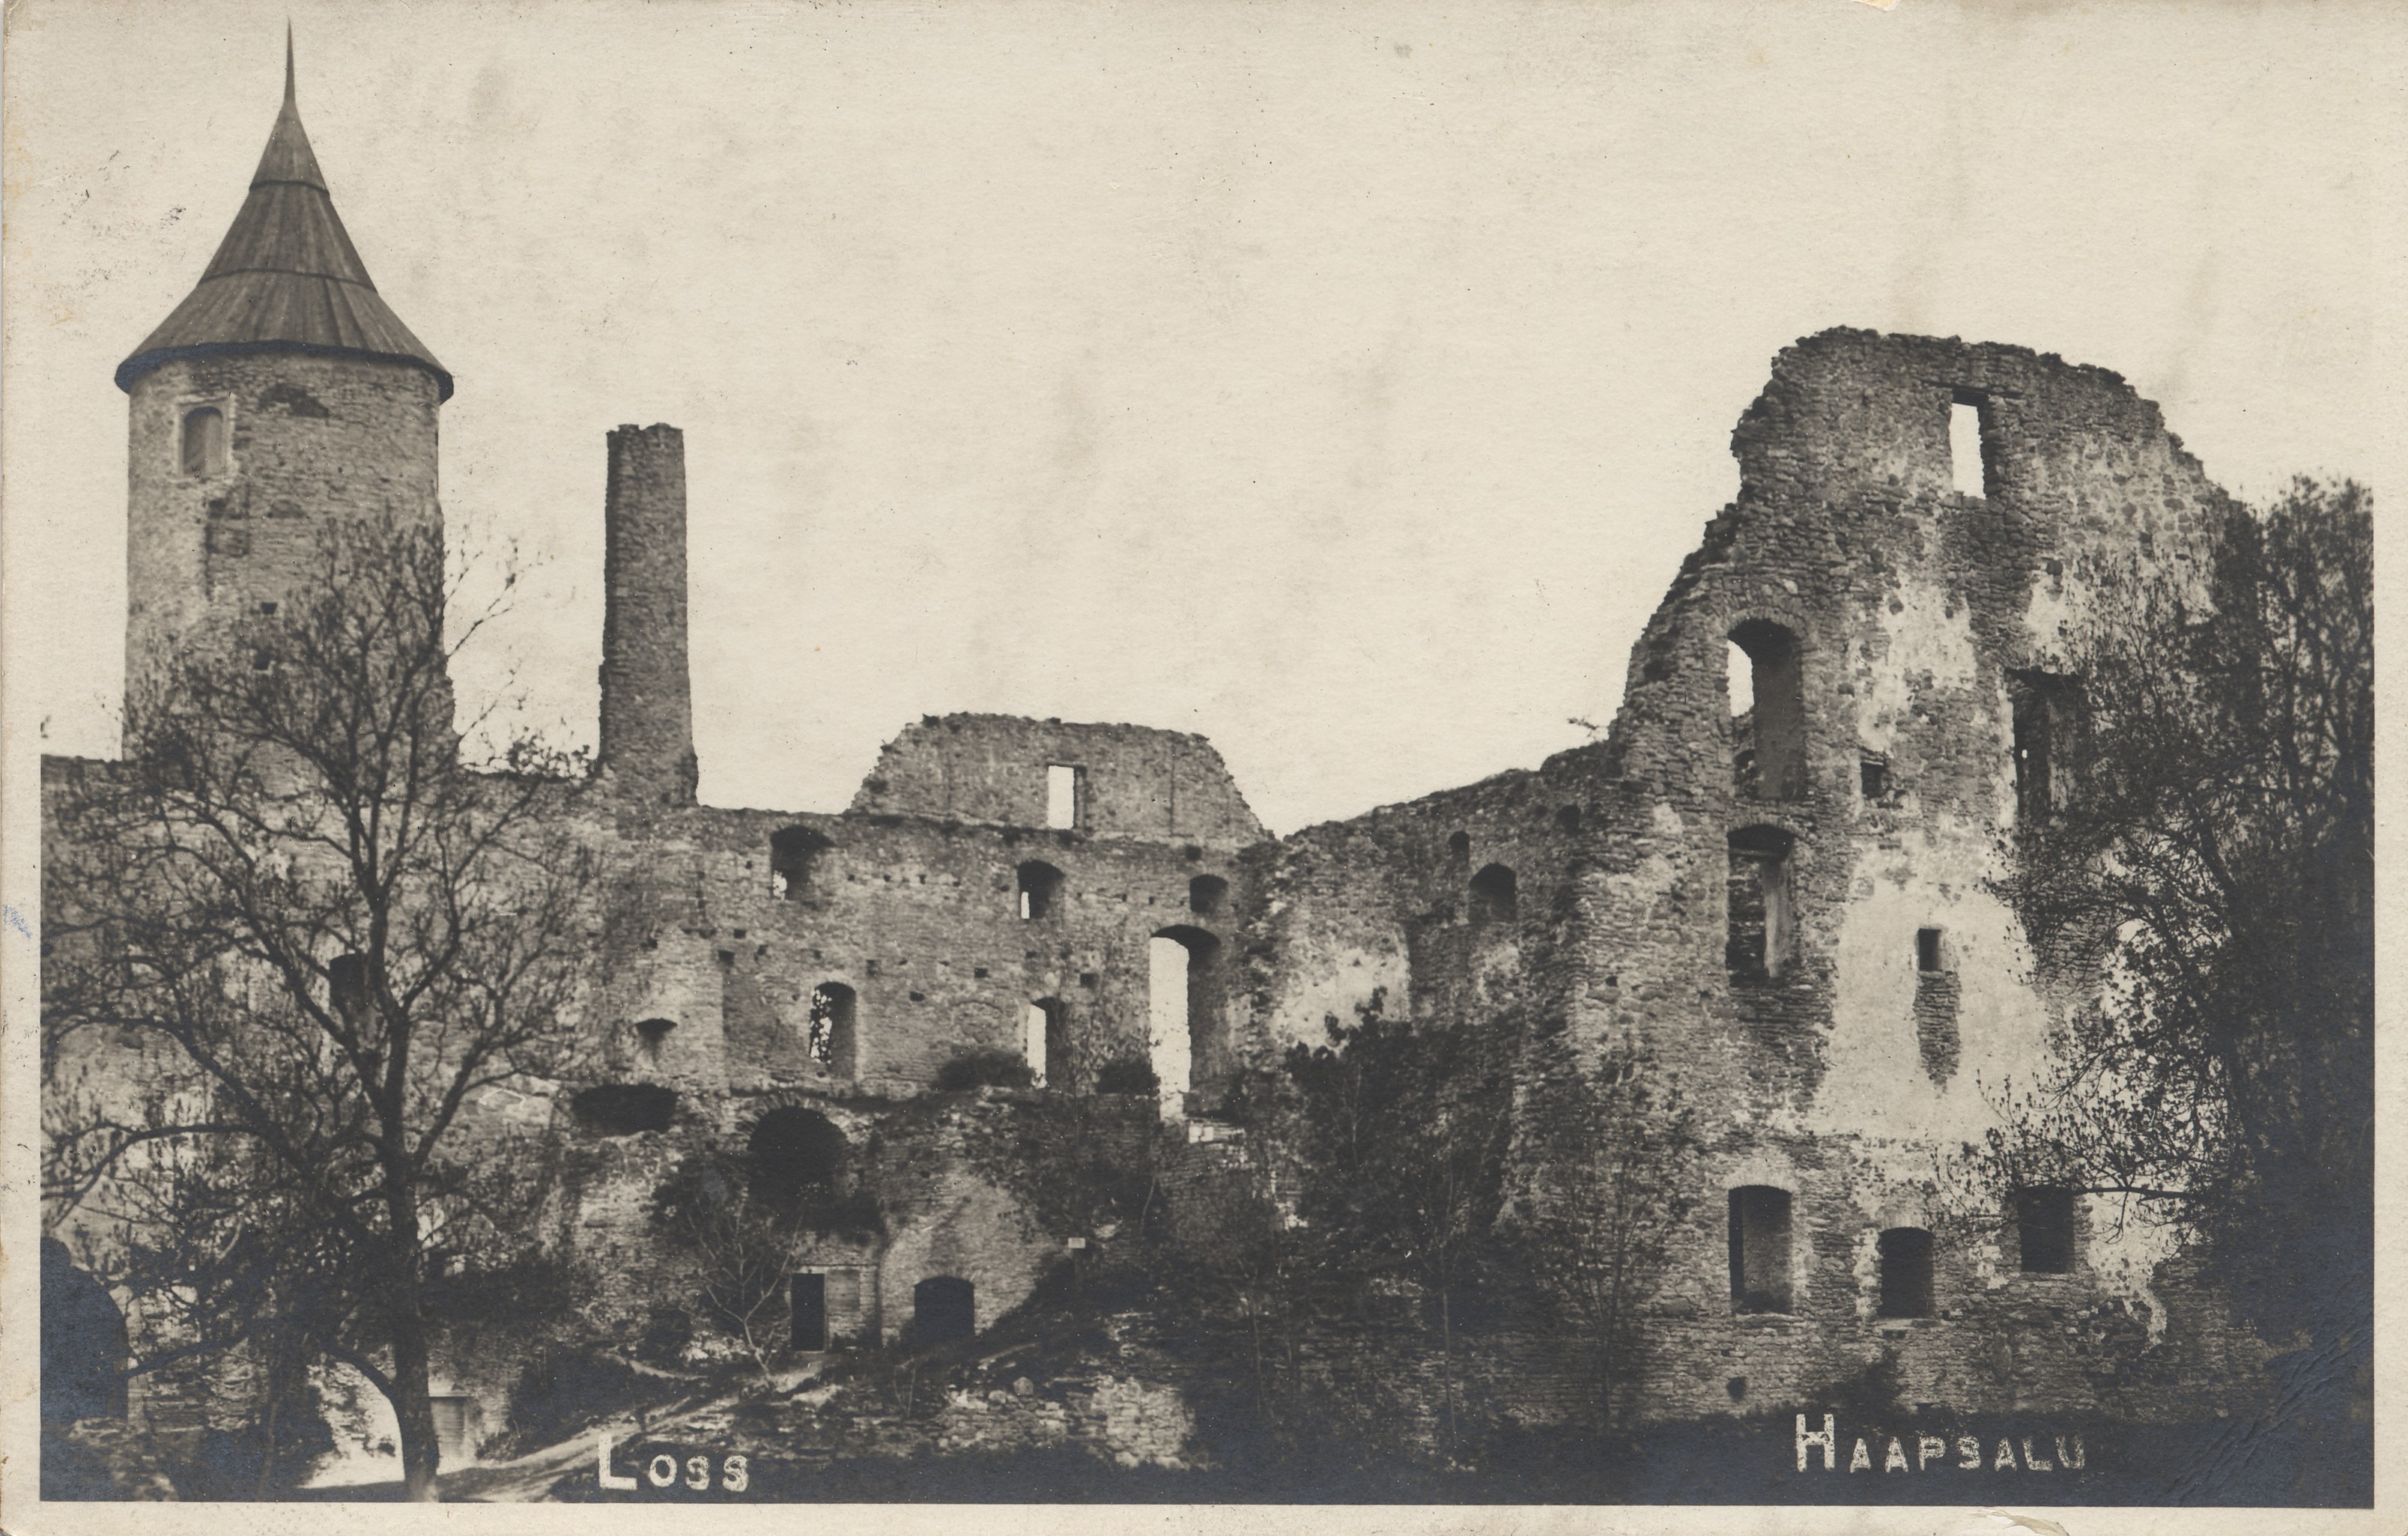 Haapsalu Castle